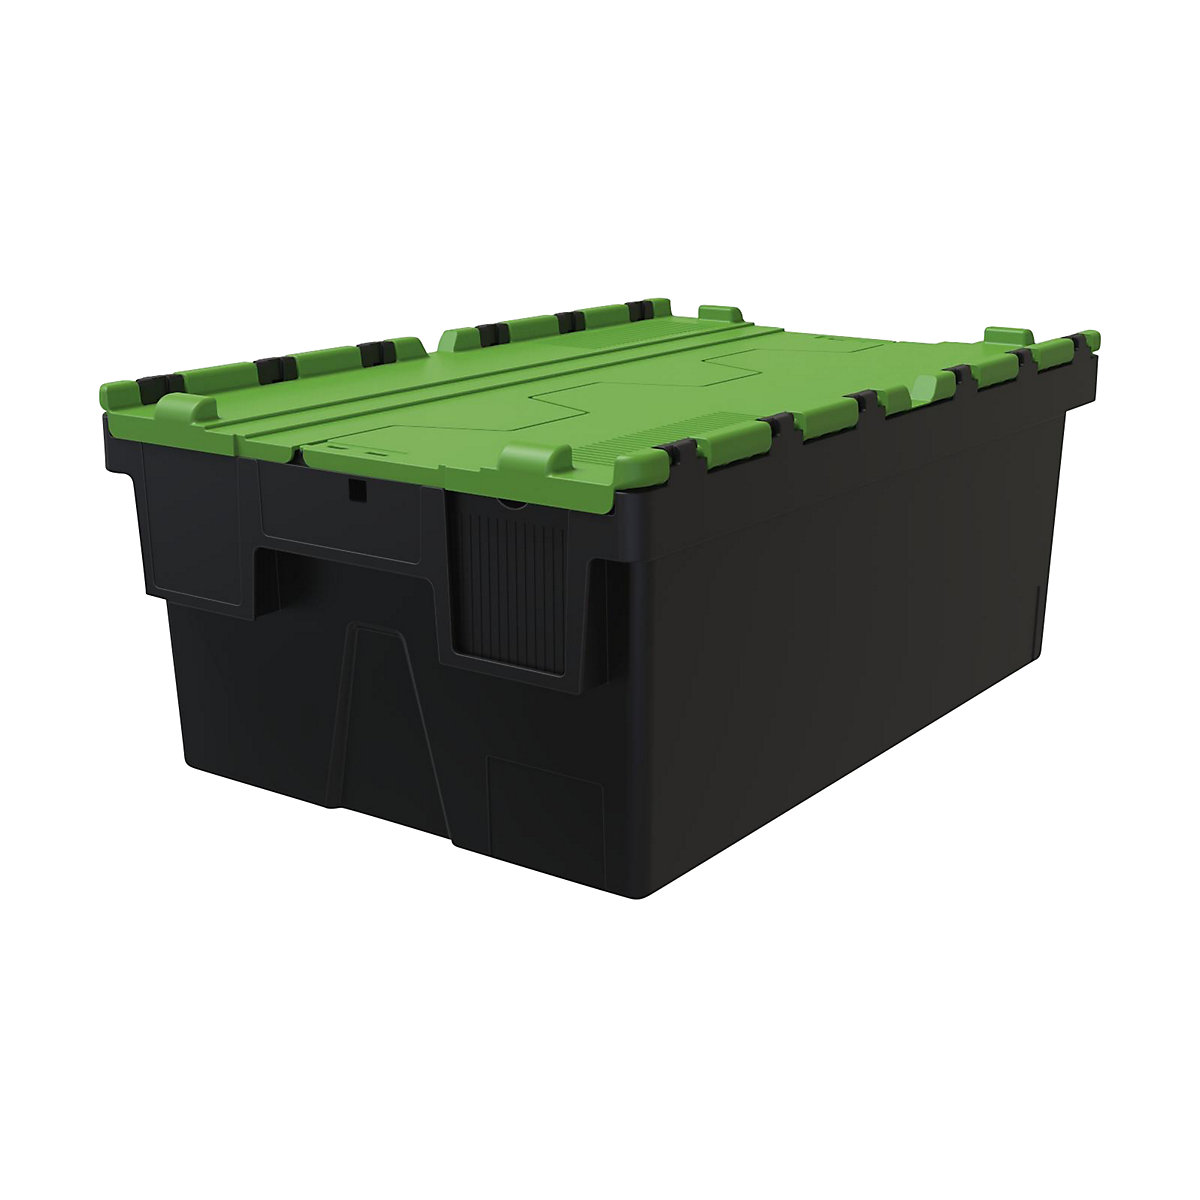 Többször használható rakásolható tároló, h x szé x ma 600 x 400 x 250 mm, cs. e. 5 db, fekete színben, zöld fedéllel